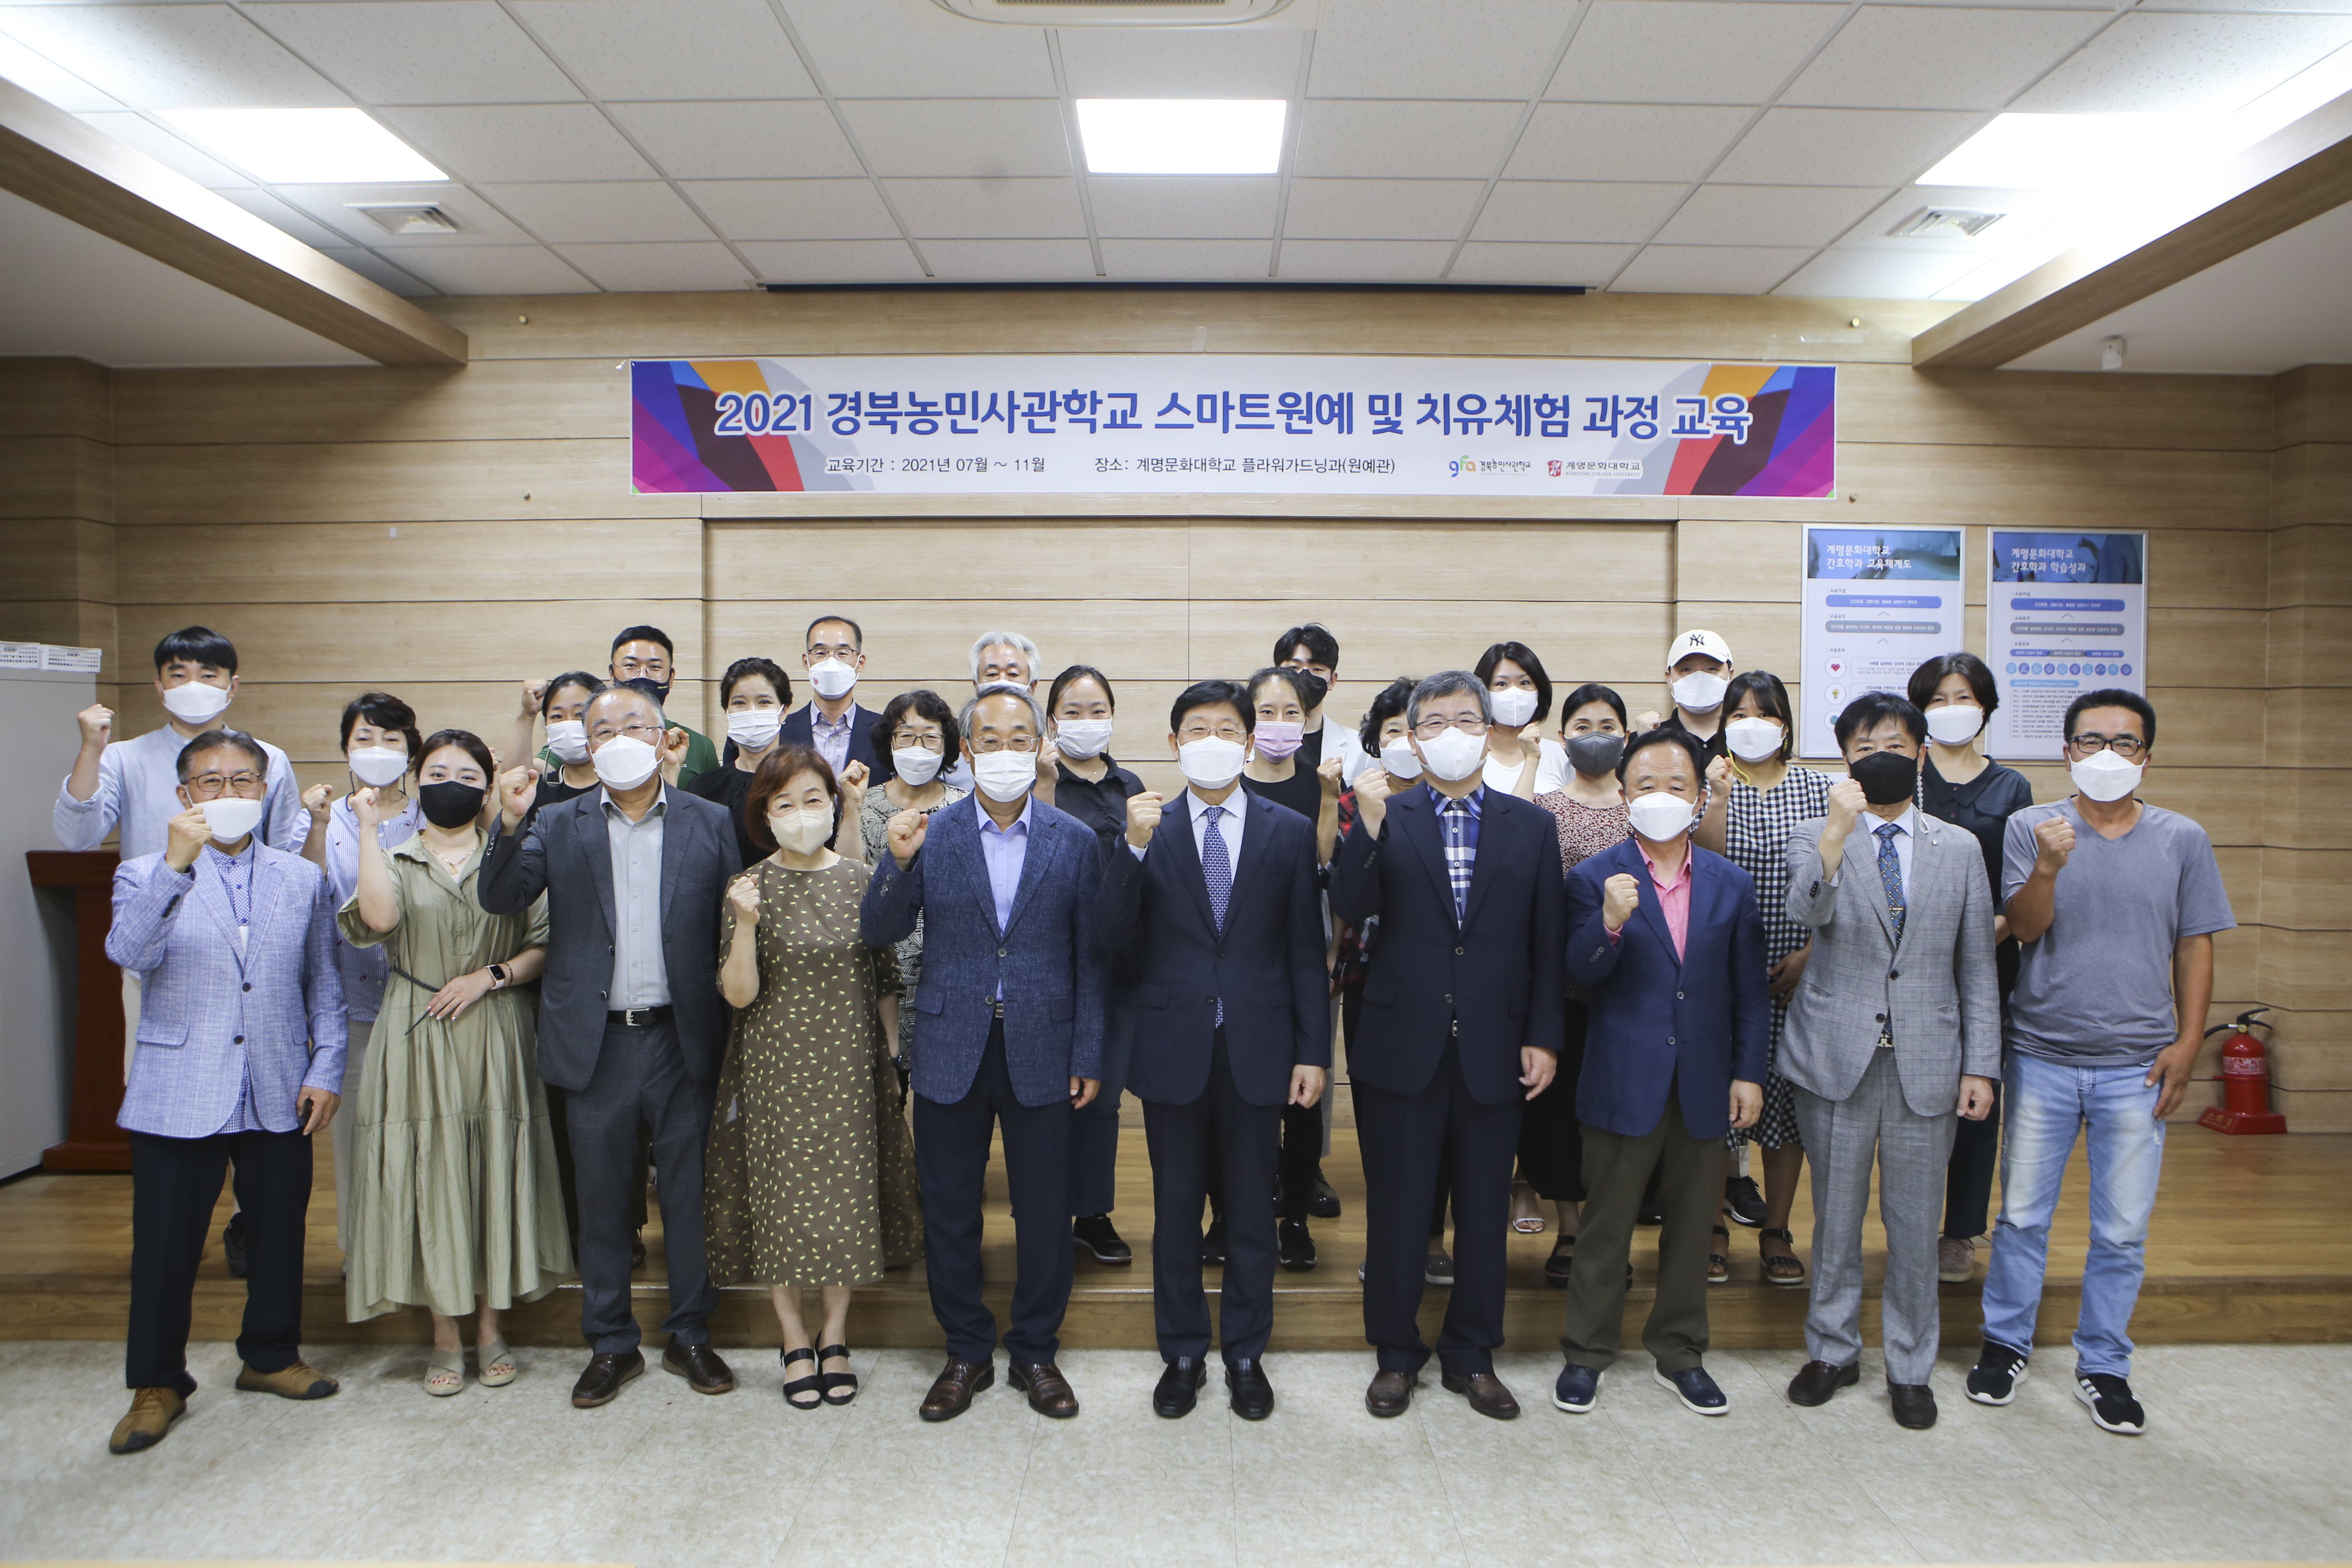 2021 경북농민사관학교 스마트원예 및 치유체험 과정 입학식